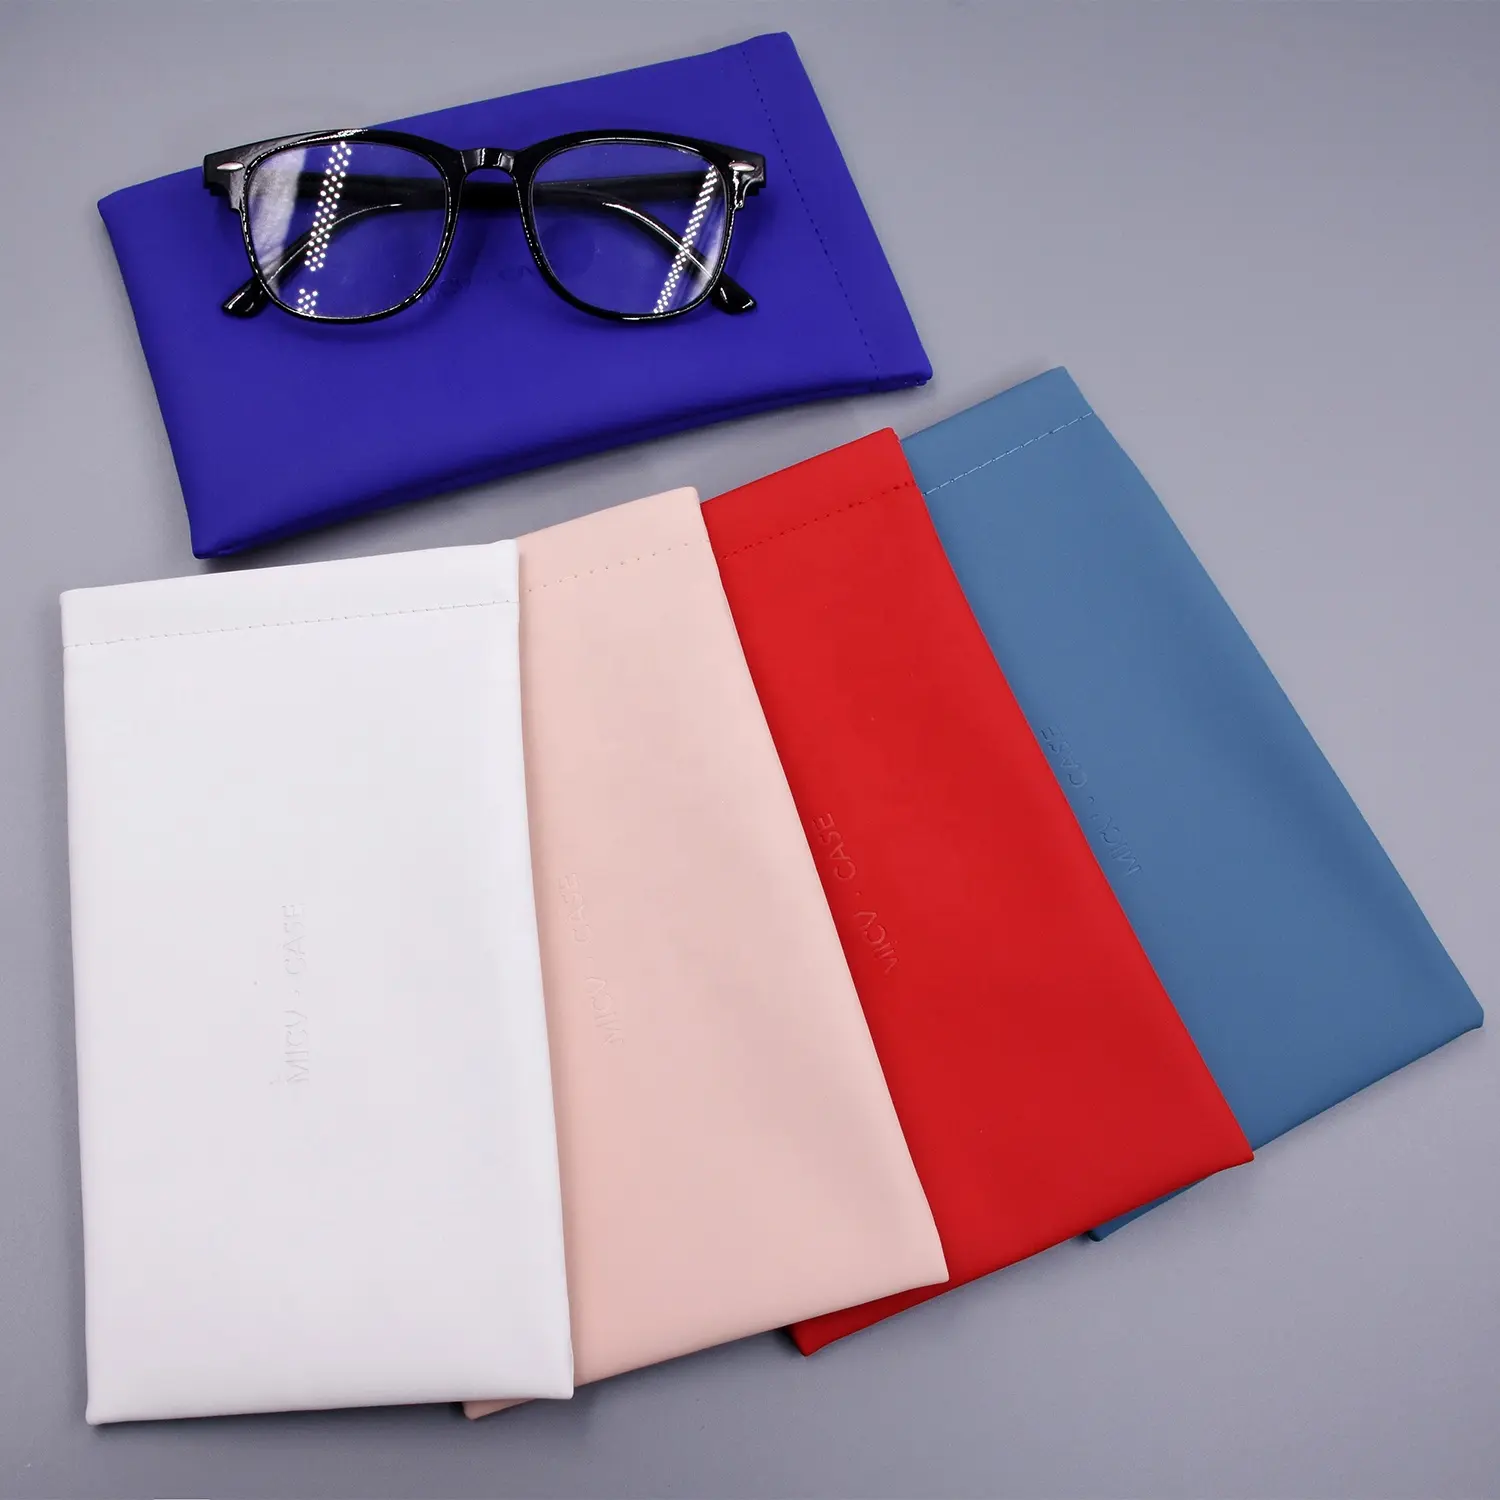 Bestpackaging deri yumuşak güneş gözlüğü durumda taşınabilir açmak için sıkmak gözlük kılıfı özel logo gözlük çantası